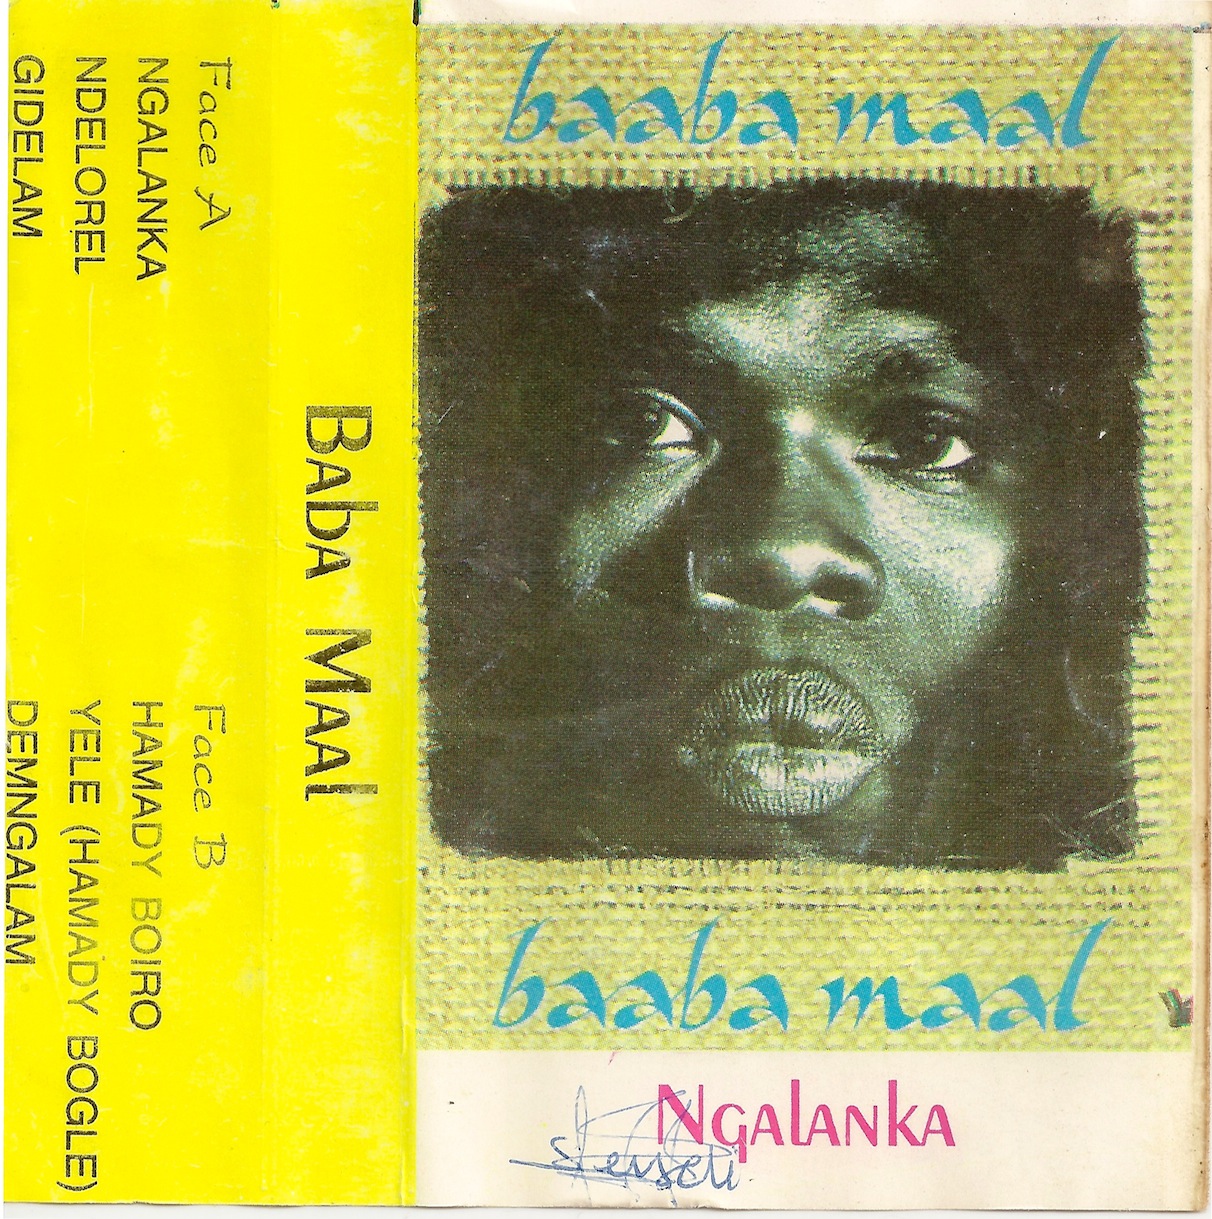 Baaba Maal - Ngalanka (Remix) Cover